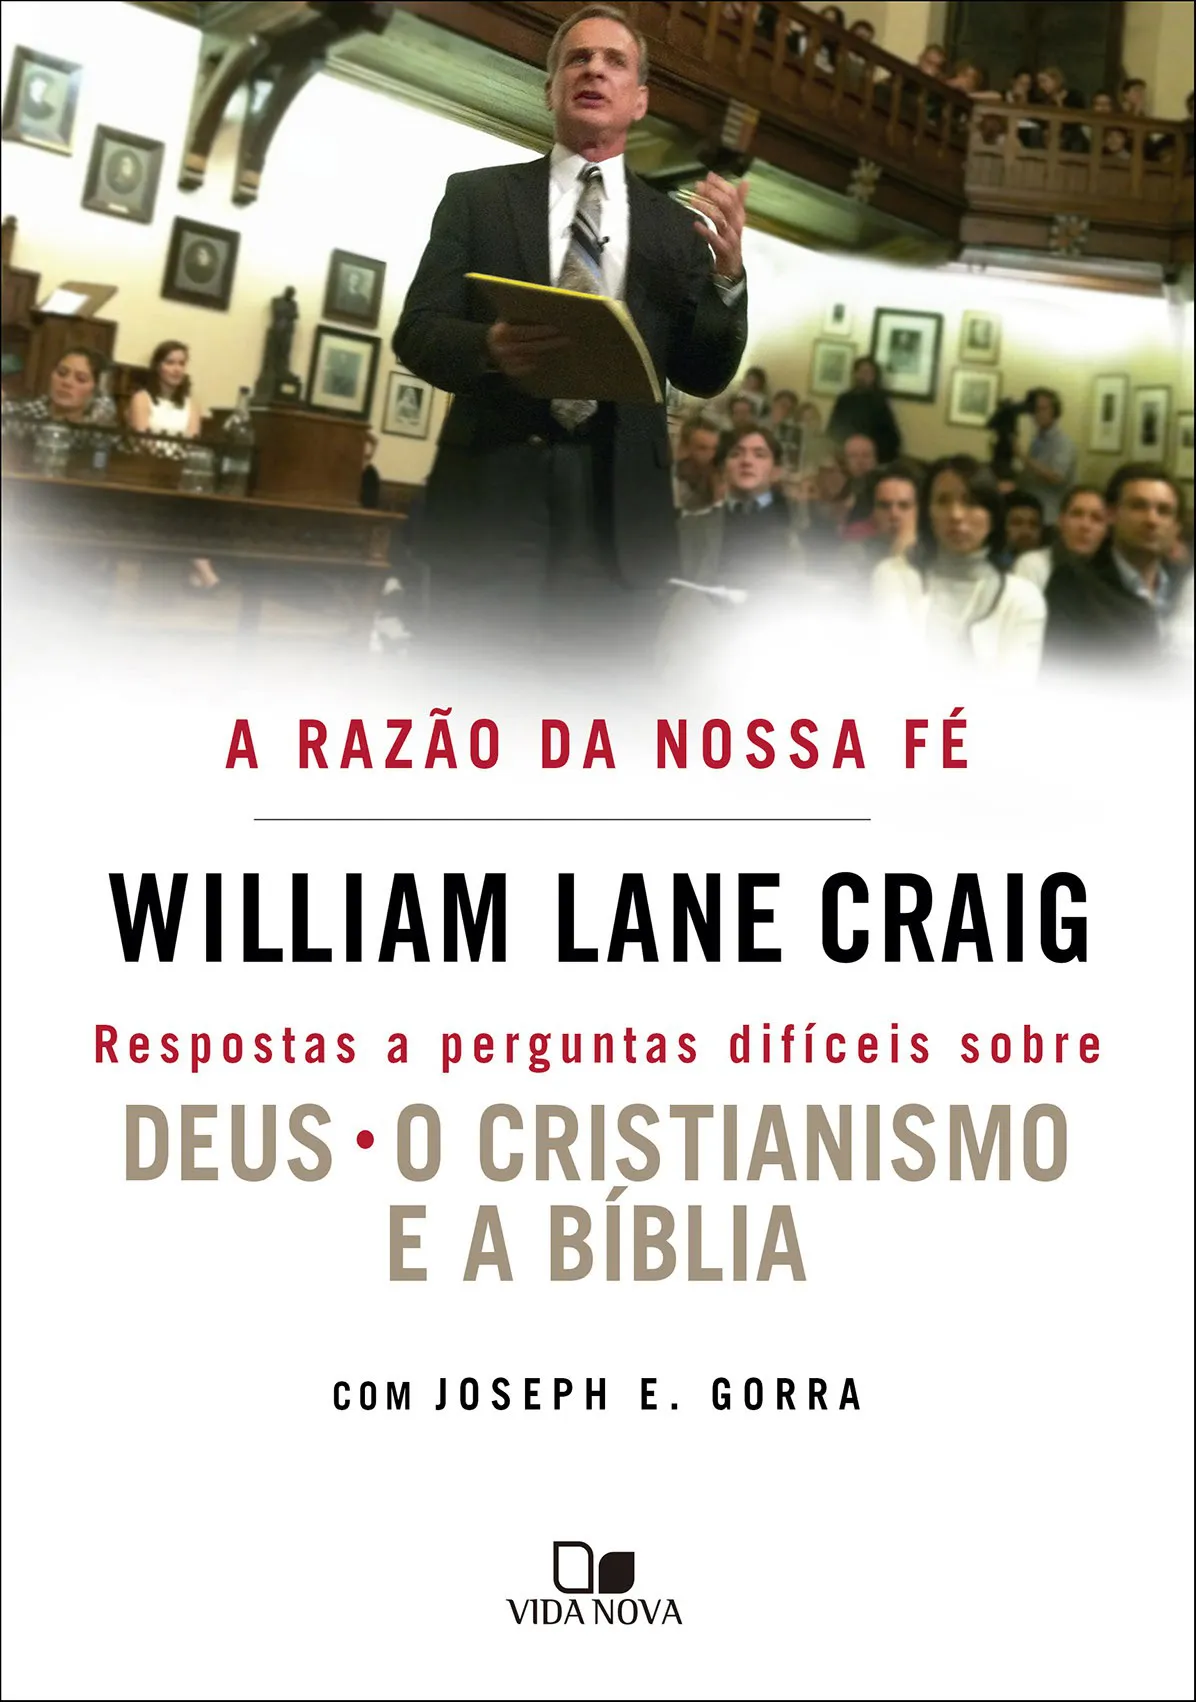 A Razão da nossa fé - Respostas a perguntas difíceis sobre Deus, o cristianismo e a Bíblia - William Lane Craig